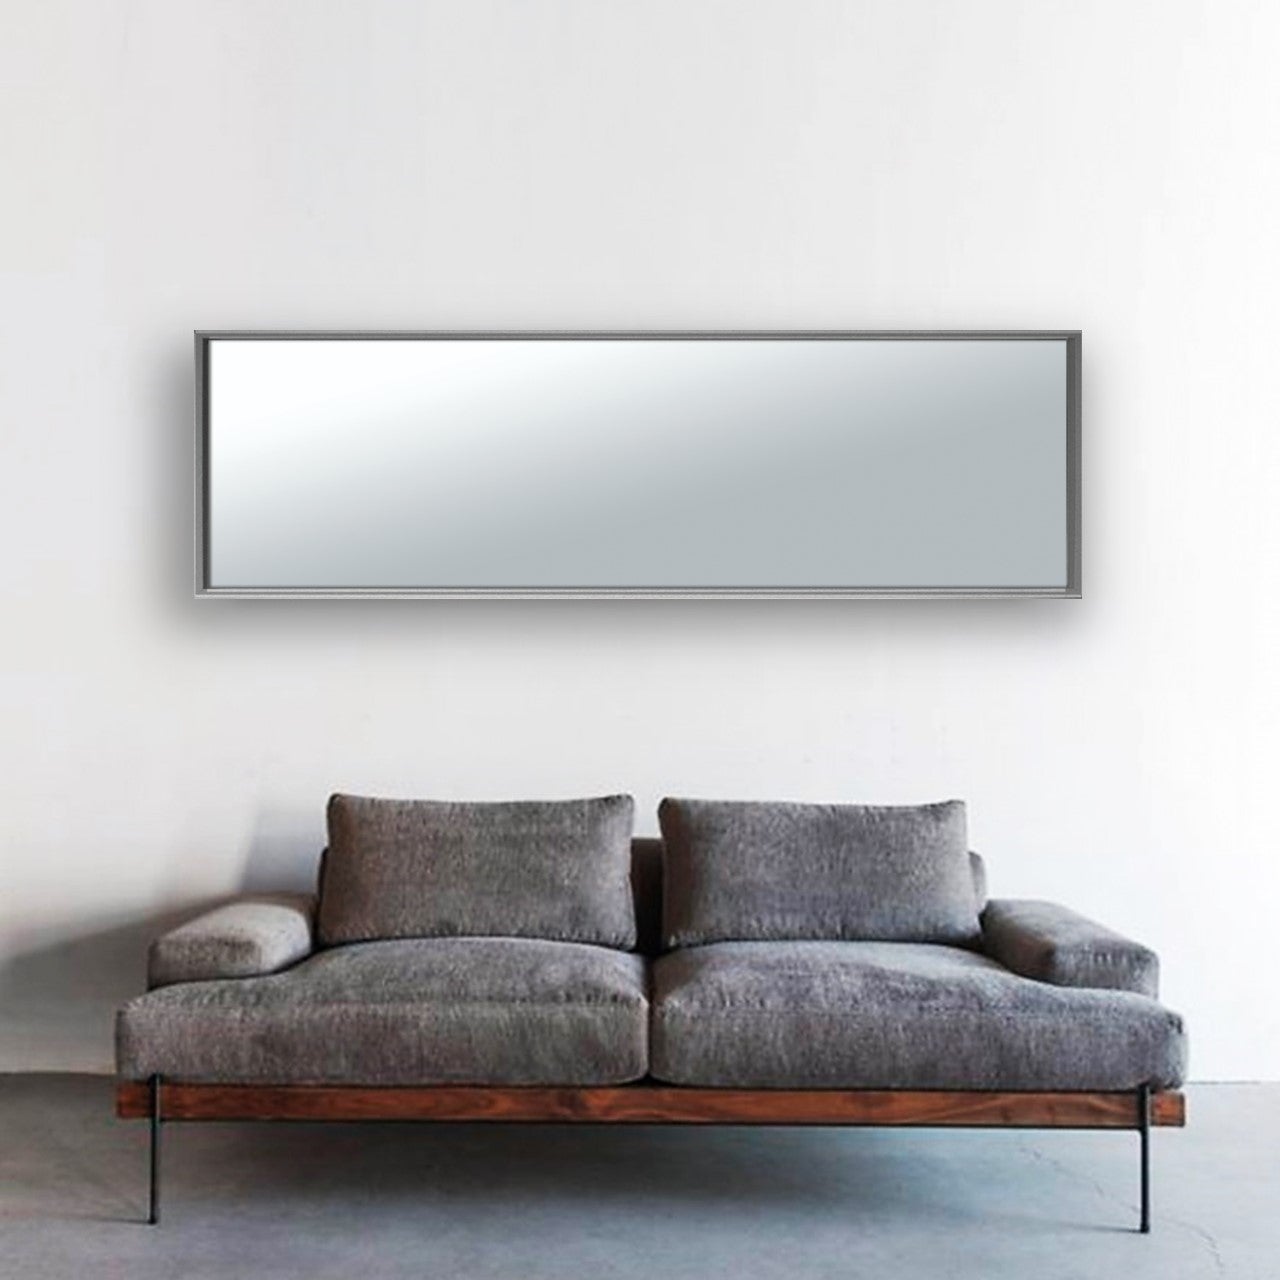 Cornice con passe-partout INSPIRE Milo, nero 26x32 cm per immagini 18x24 cm